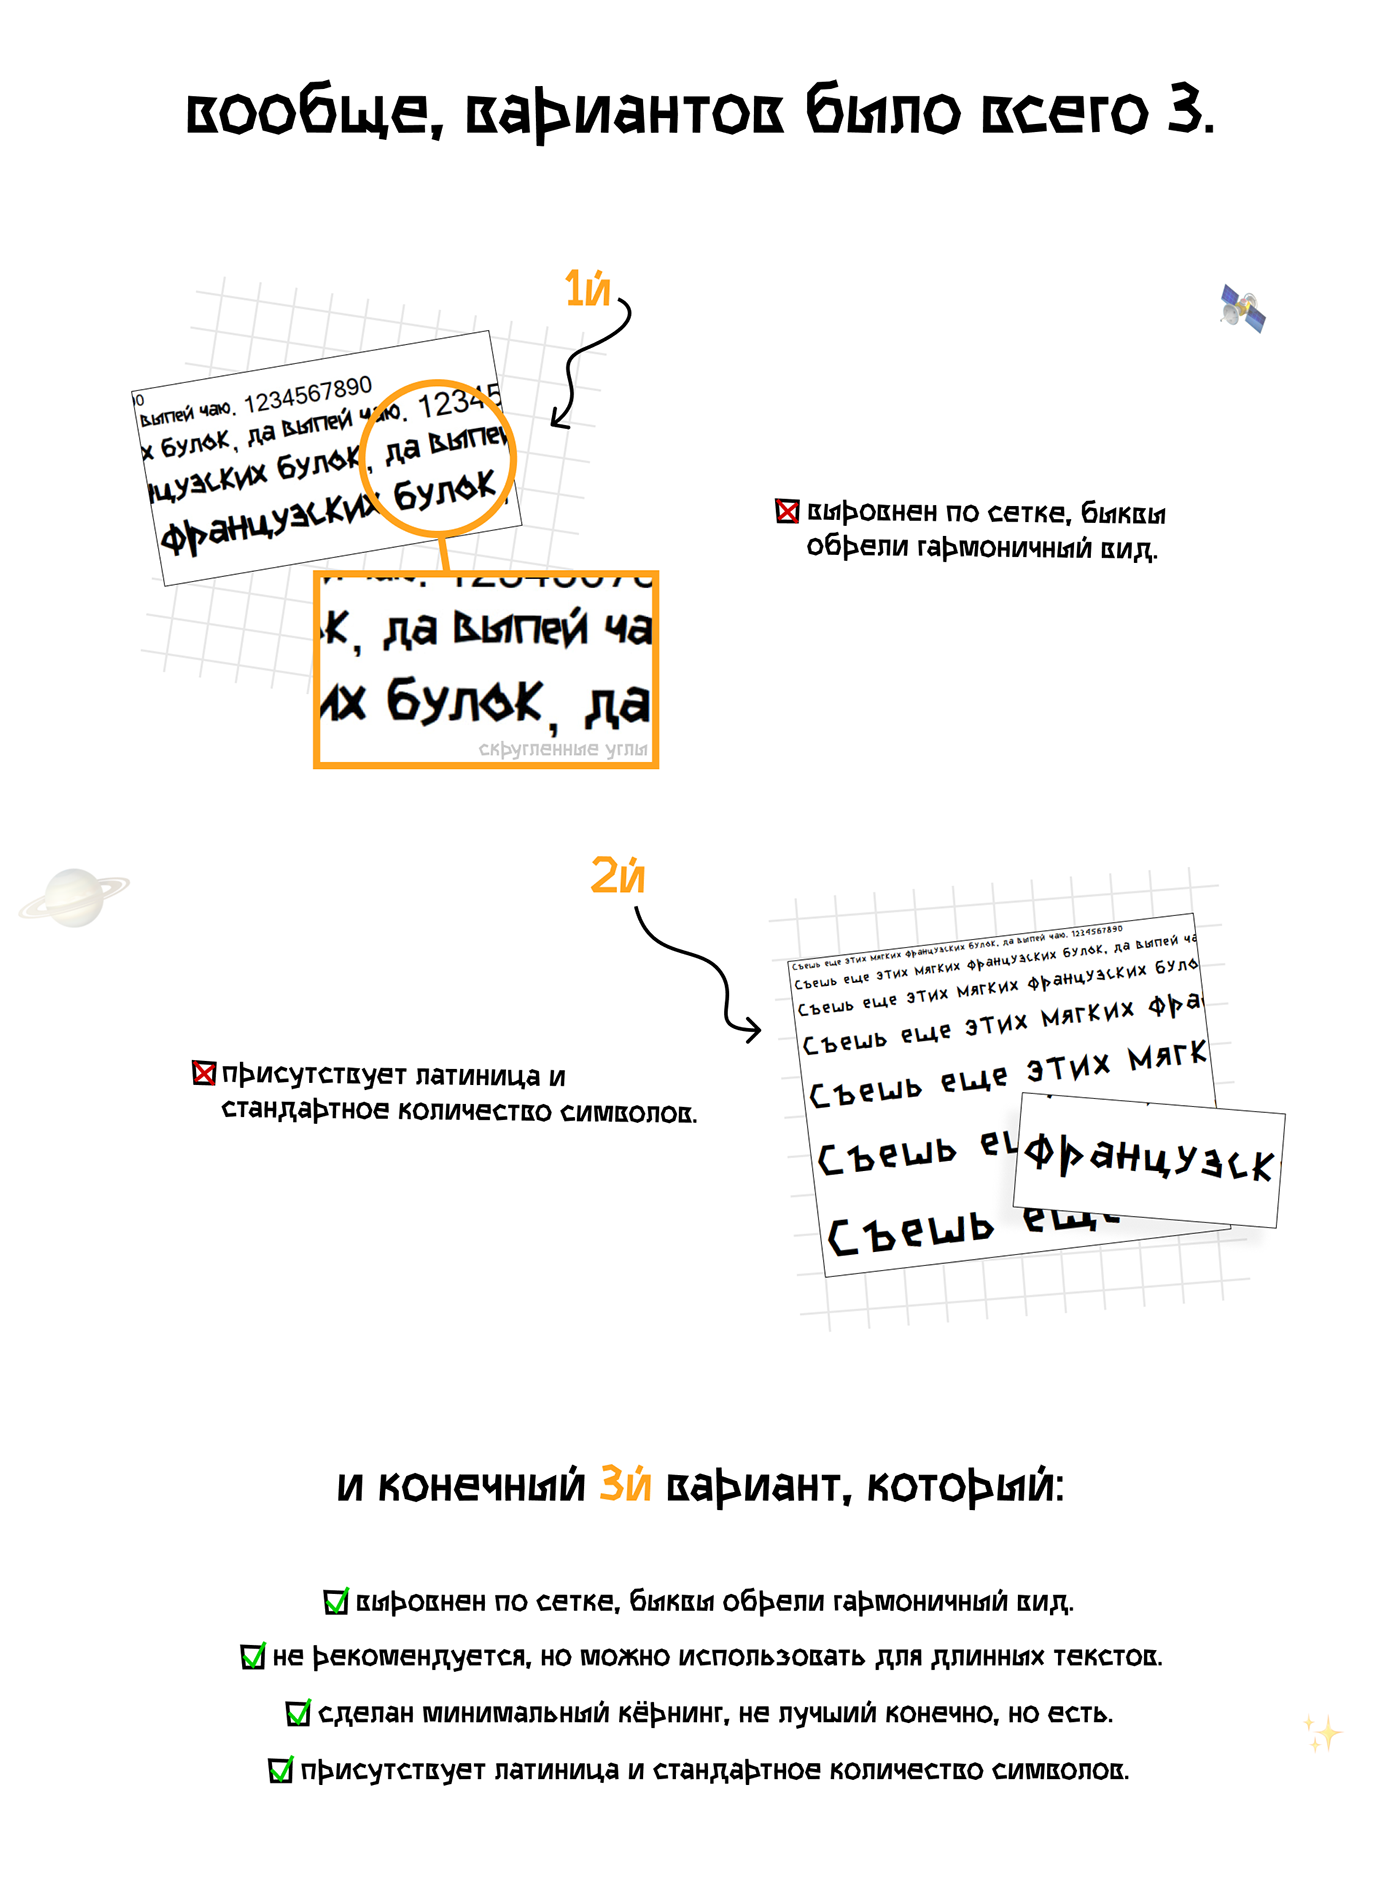 шрифт font Typeface typography   графический дизайн кириллица Cyrillic Latin free бесплатный шрифт